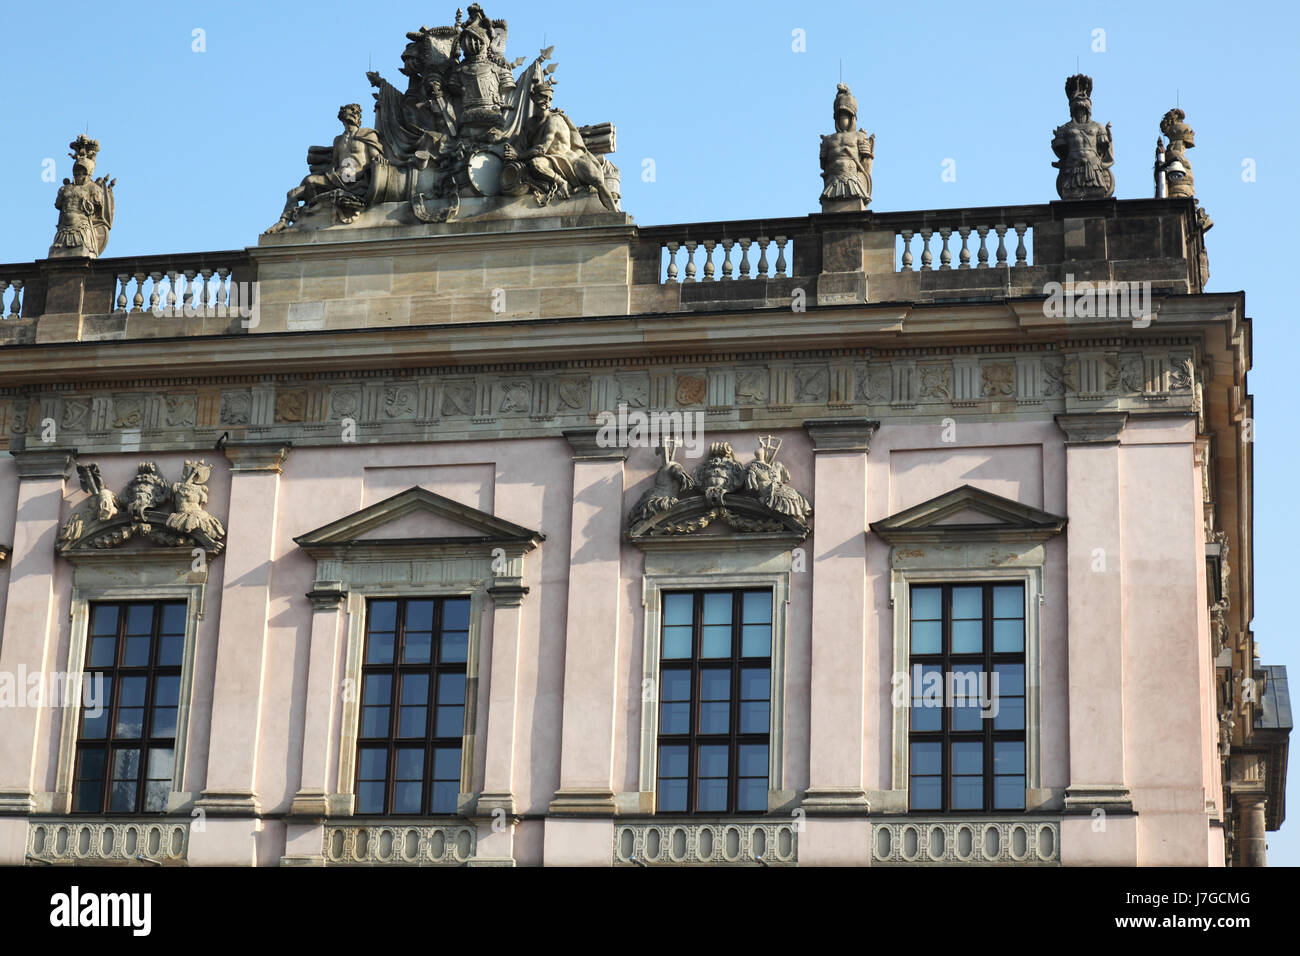 Tilleul berlin baroque allemand grand manège militaire en Prusse musée largement Banque D'Images